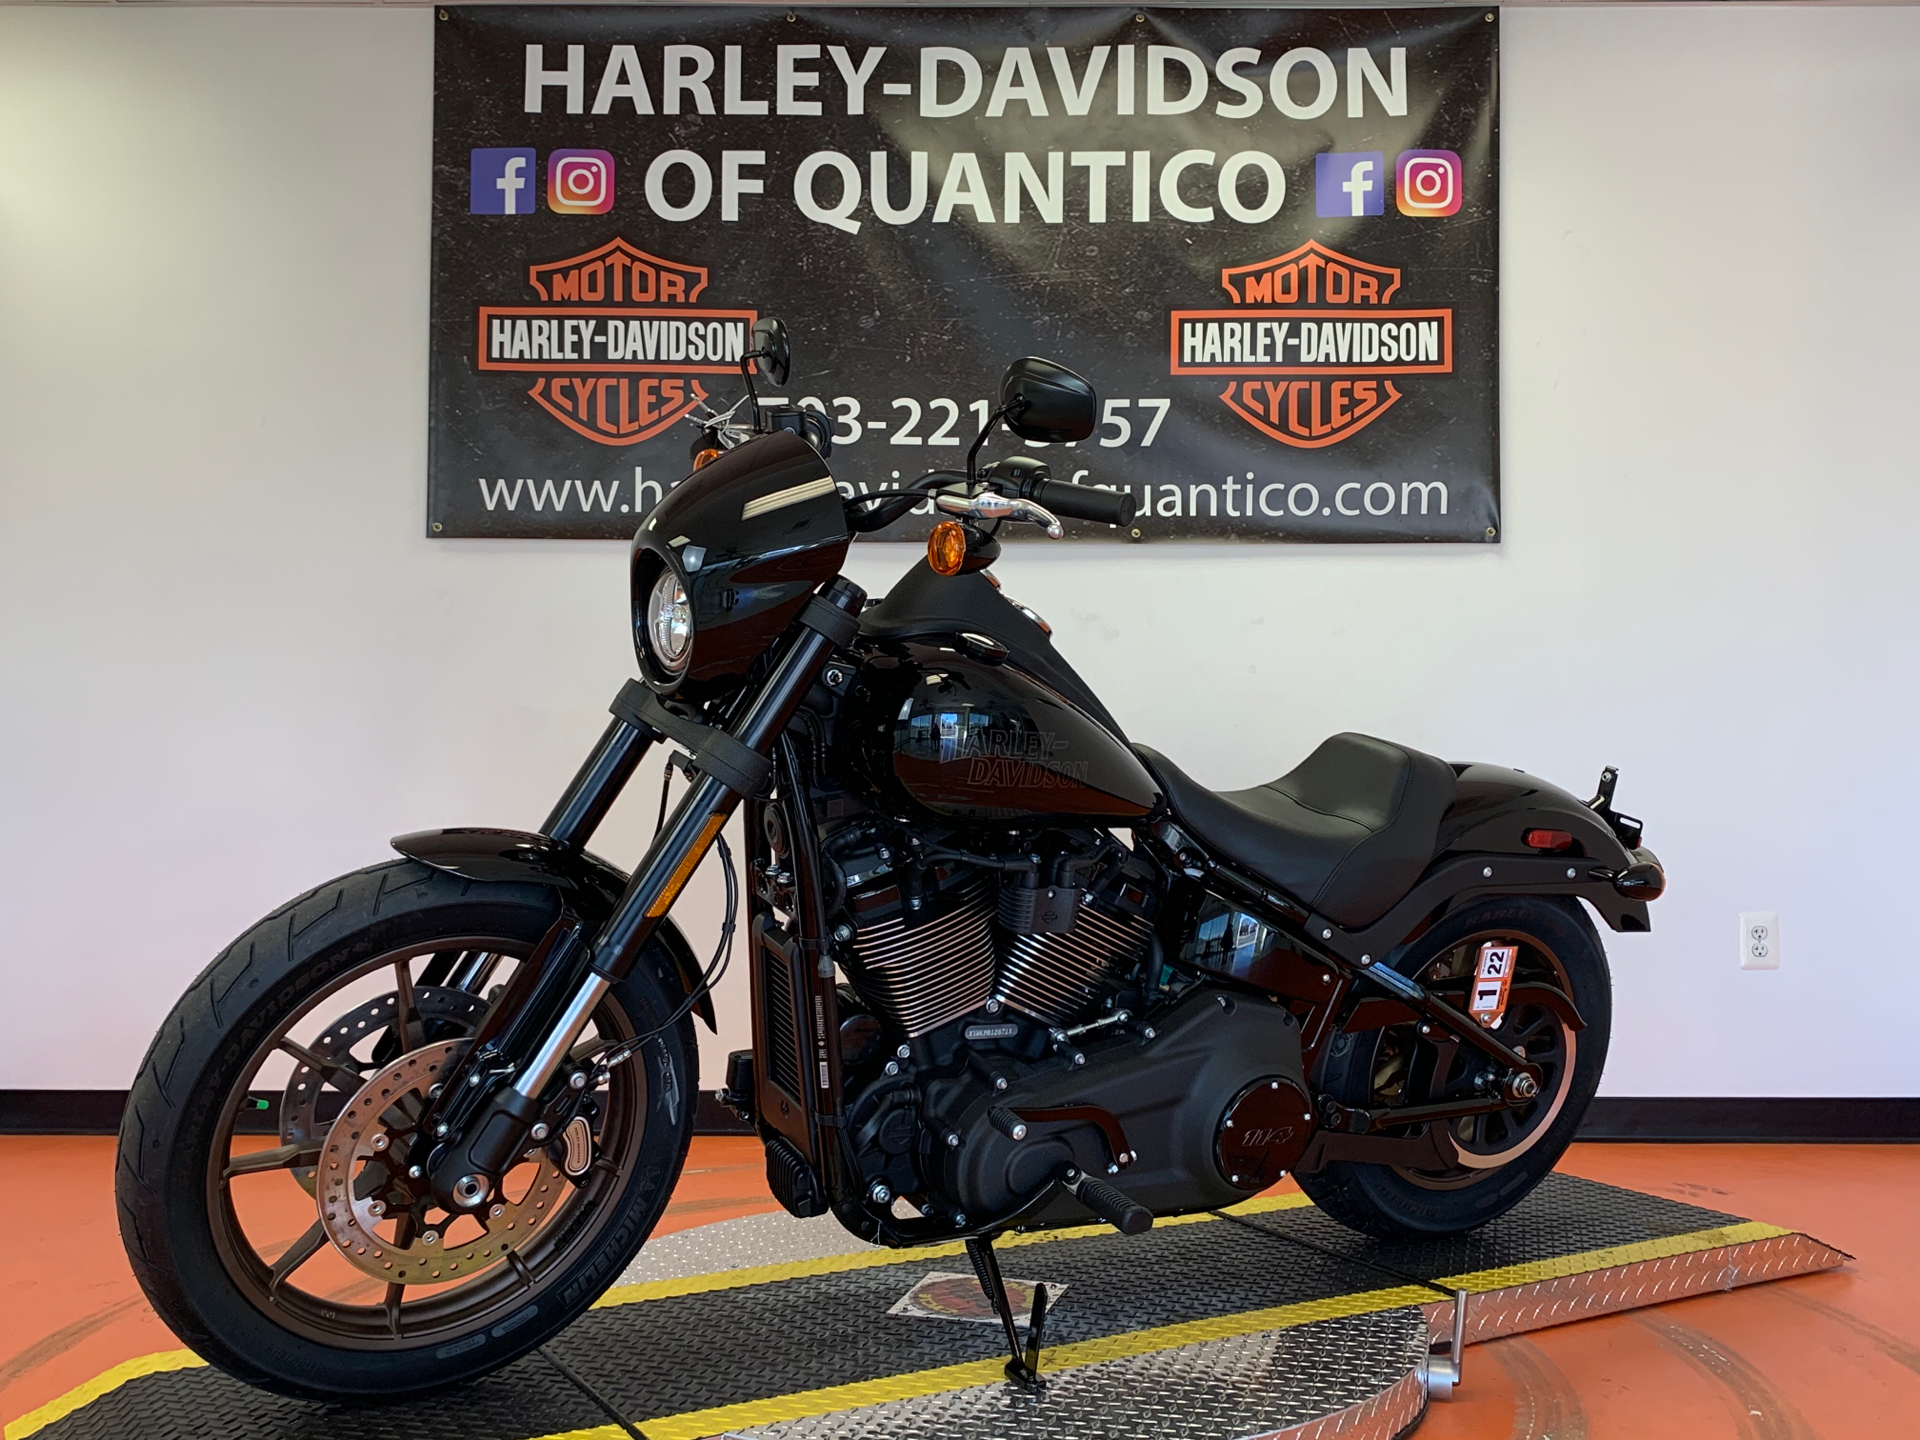 New 2021 Harley Davidson Low Rider S Motor Bikes In Fredericksburg Va 012871 Black